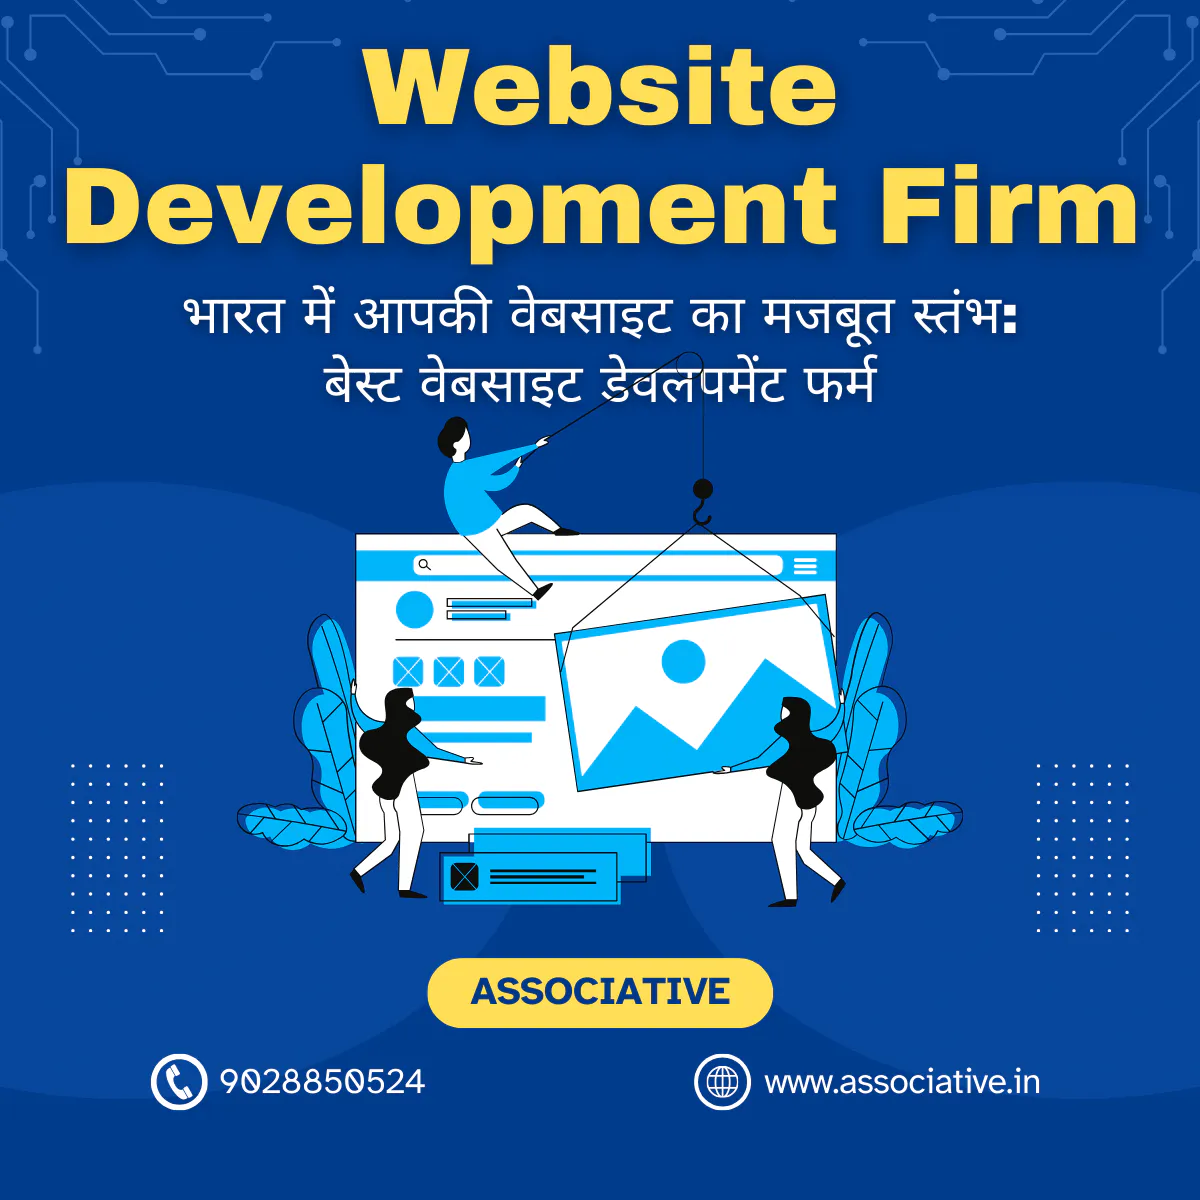 Website Development Firm